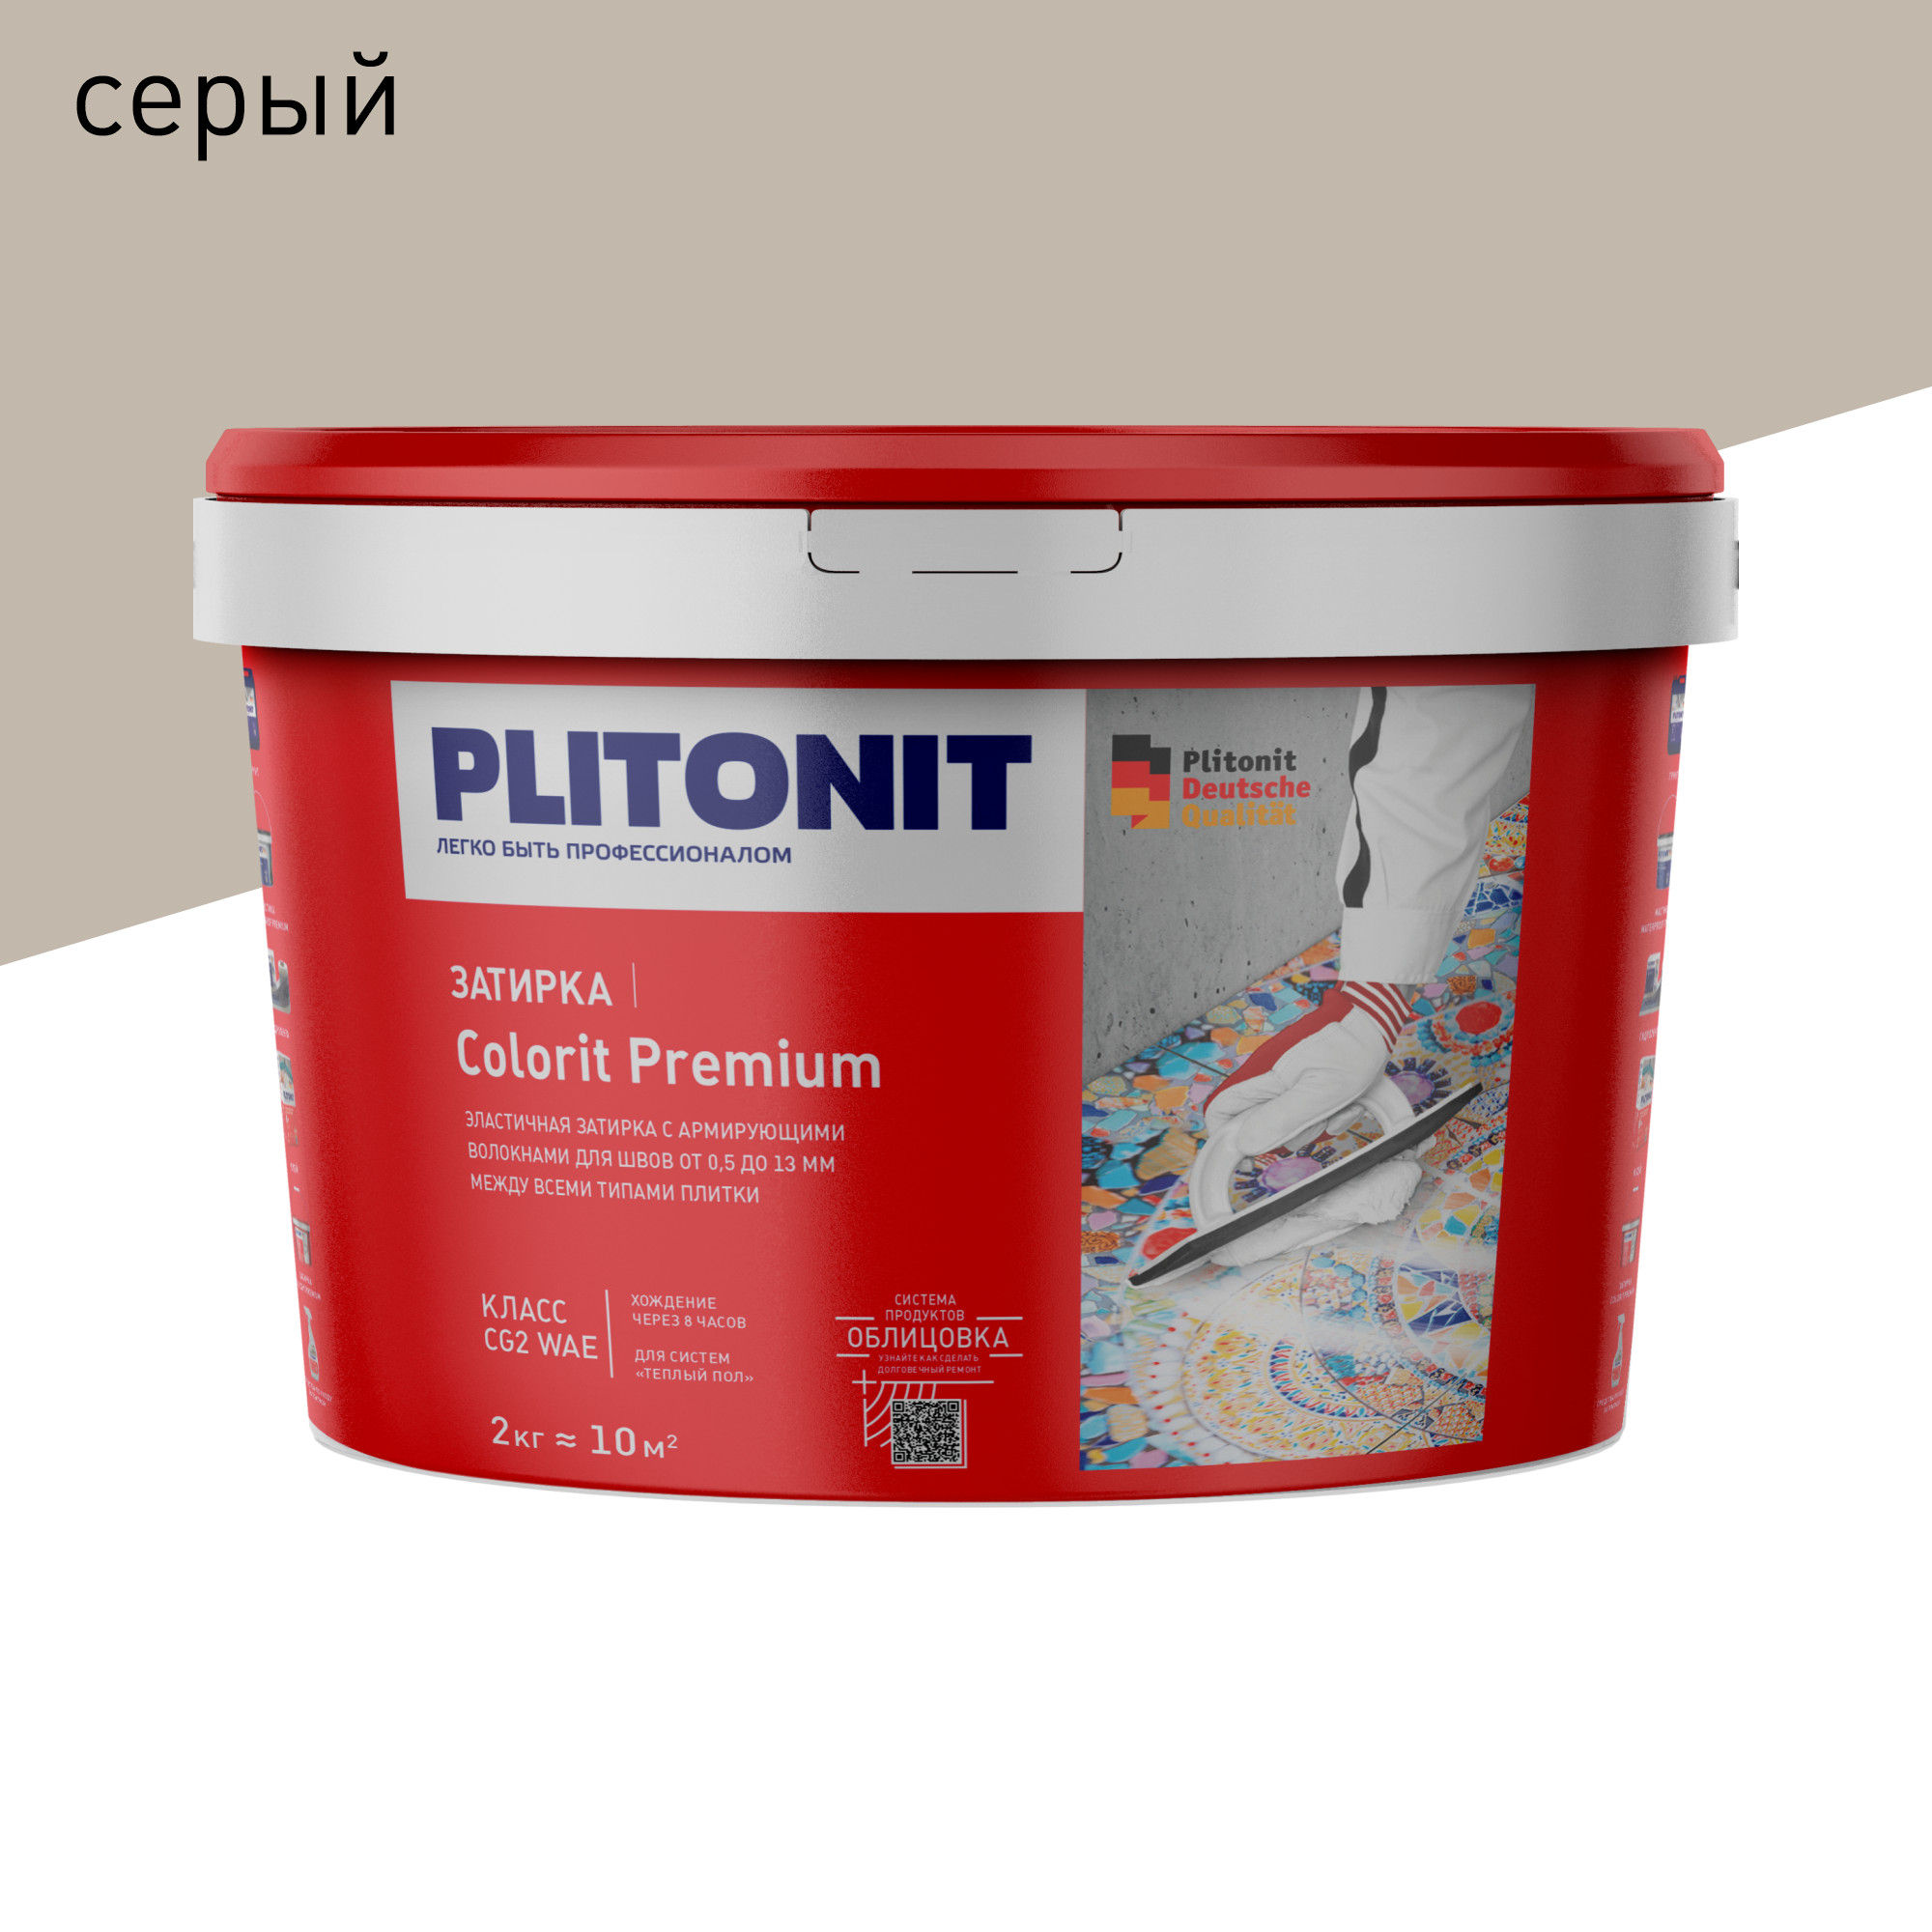 Затирка PLITONIT Colorit Premium серая 2 кг затирка плитонит colorit premium водонепроницаемая серая 0 5 13 мм 2 кг